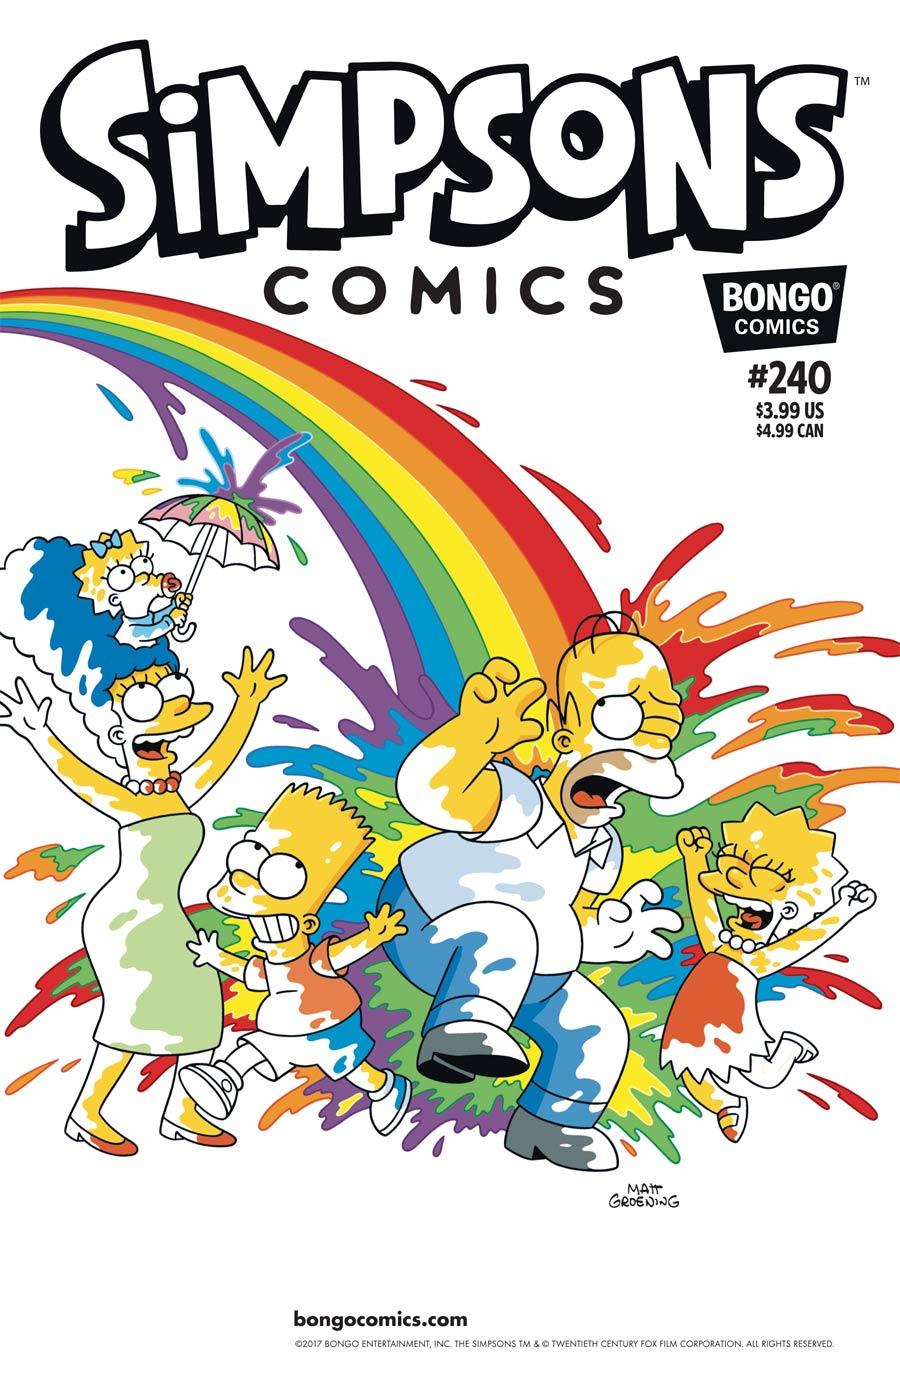 Simpsons Comics Vol. 1 #240